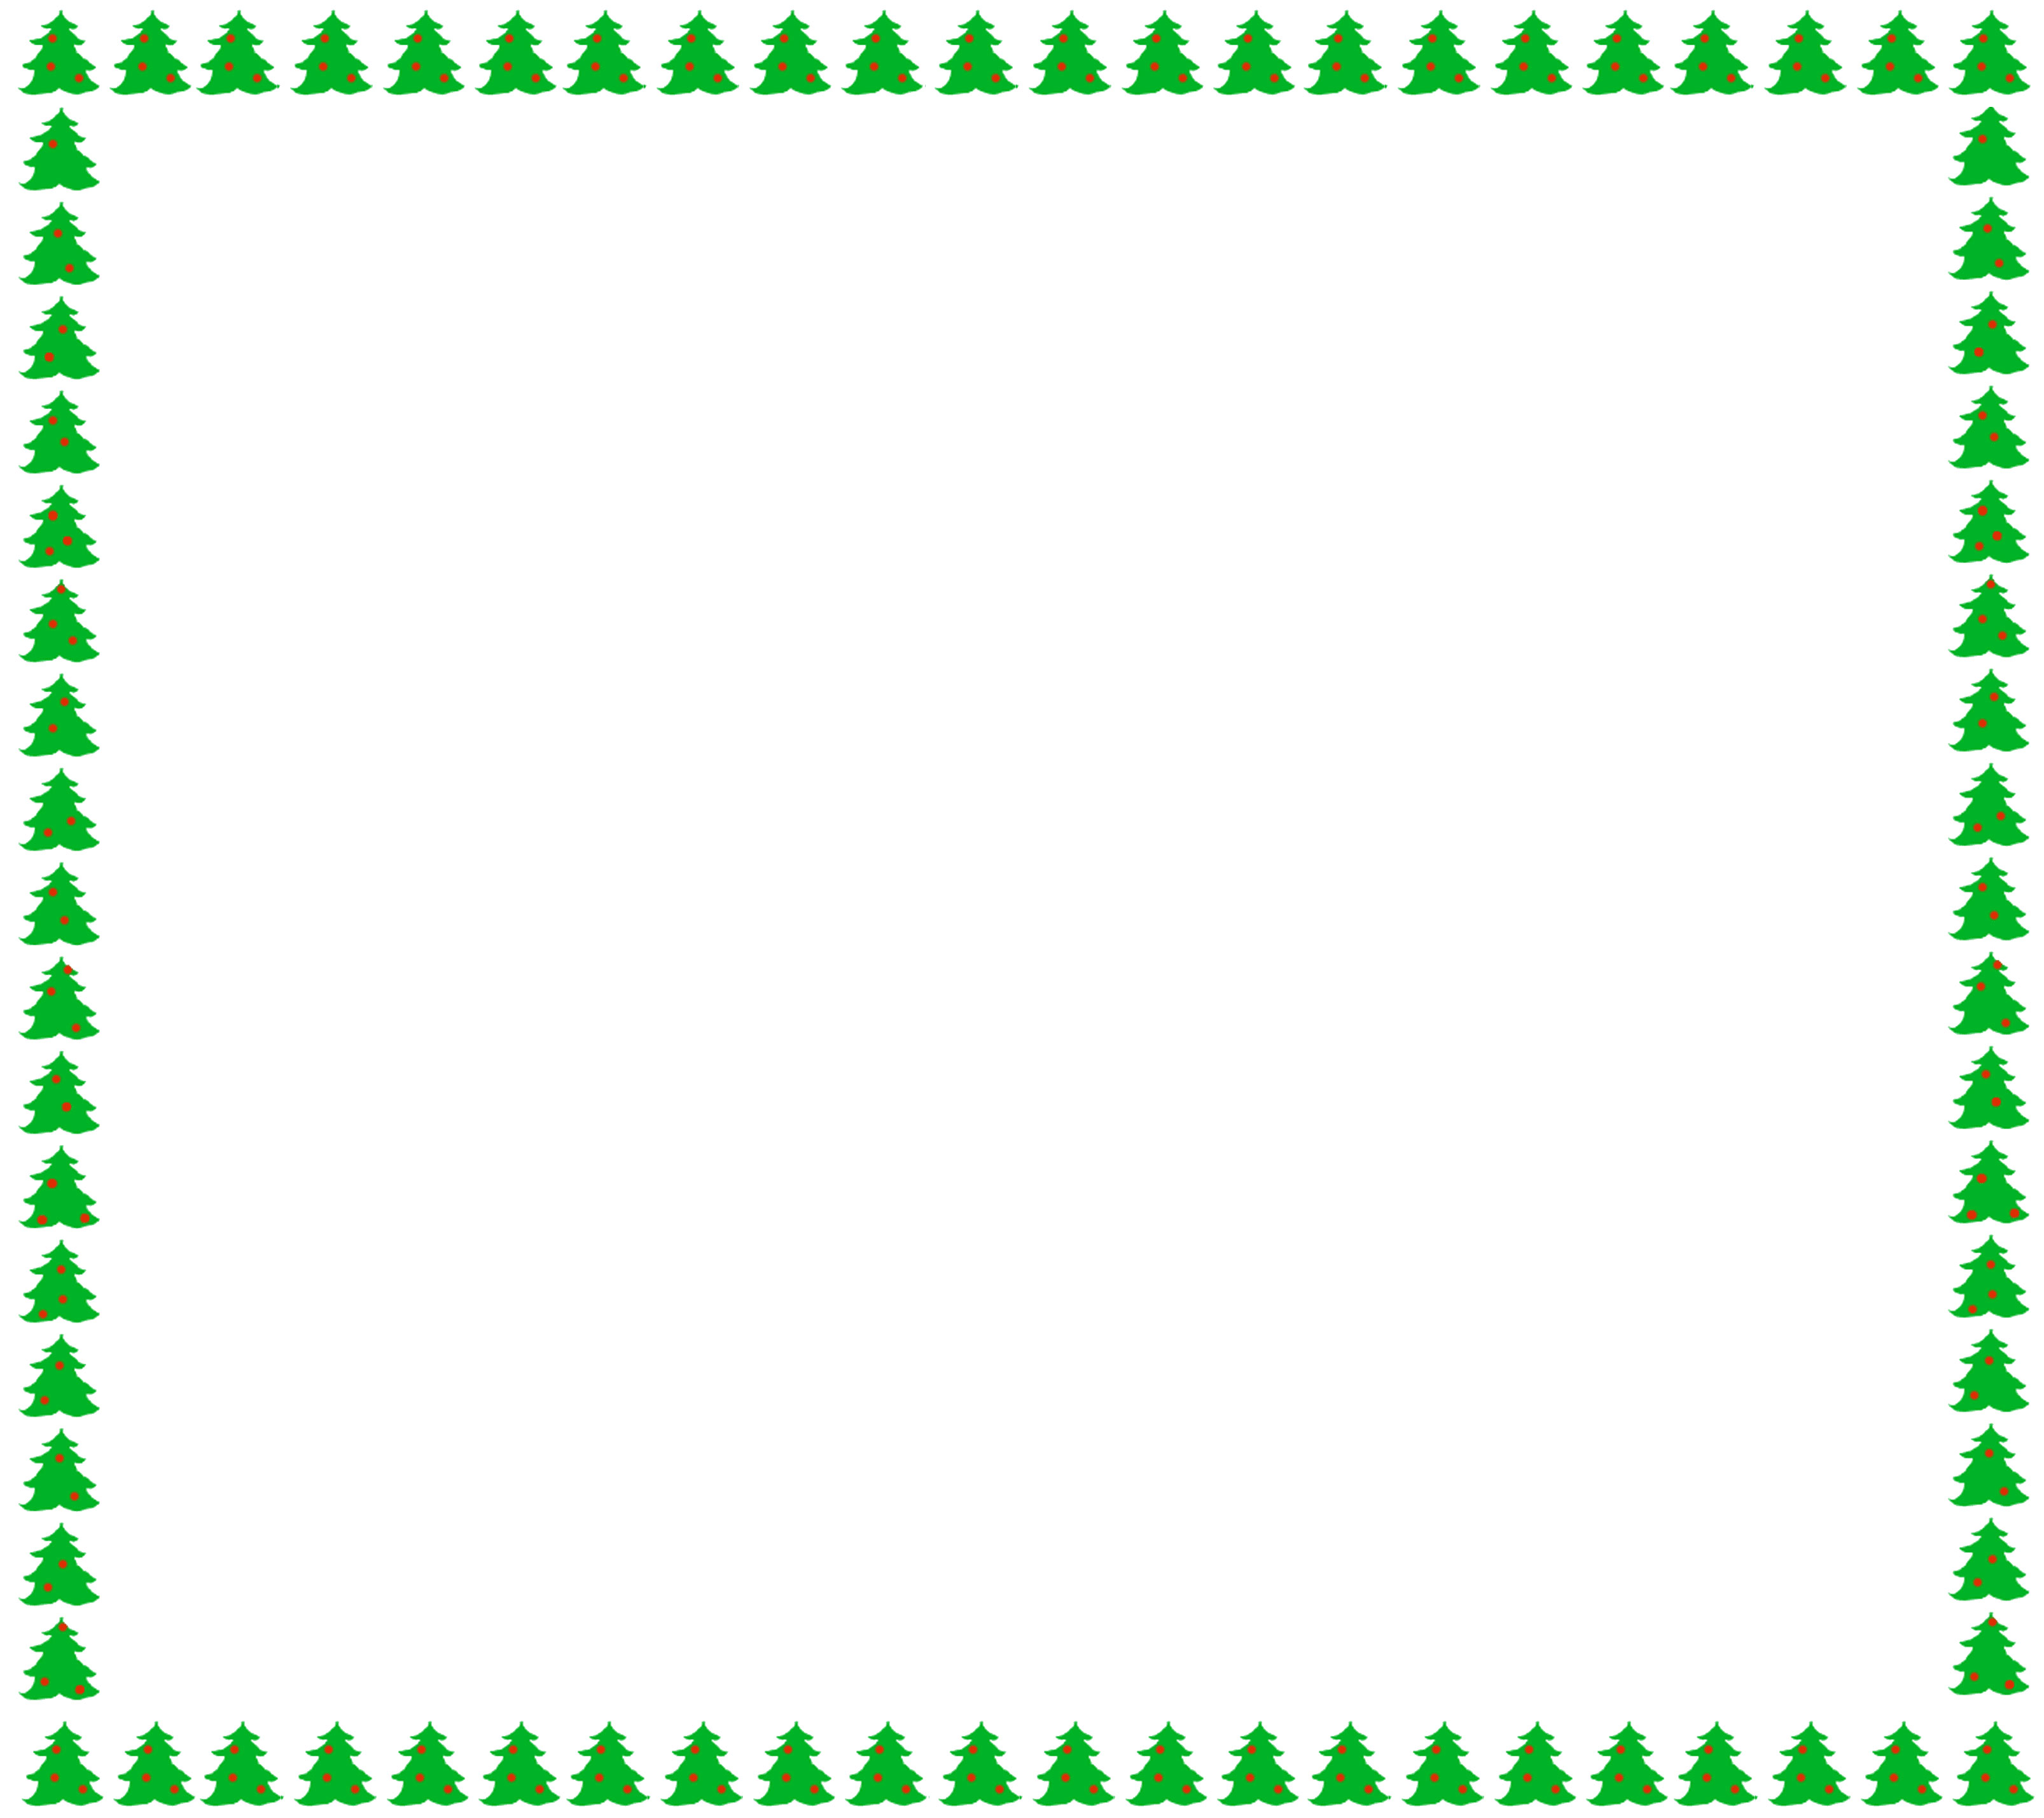 葉っぱ 草木のイラスト フリー素材 フレーム枠no 113 クリスマスツリー 緑